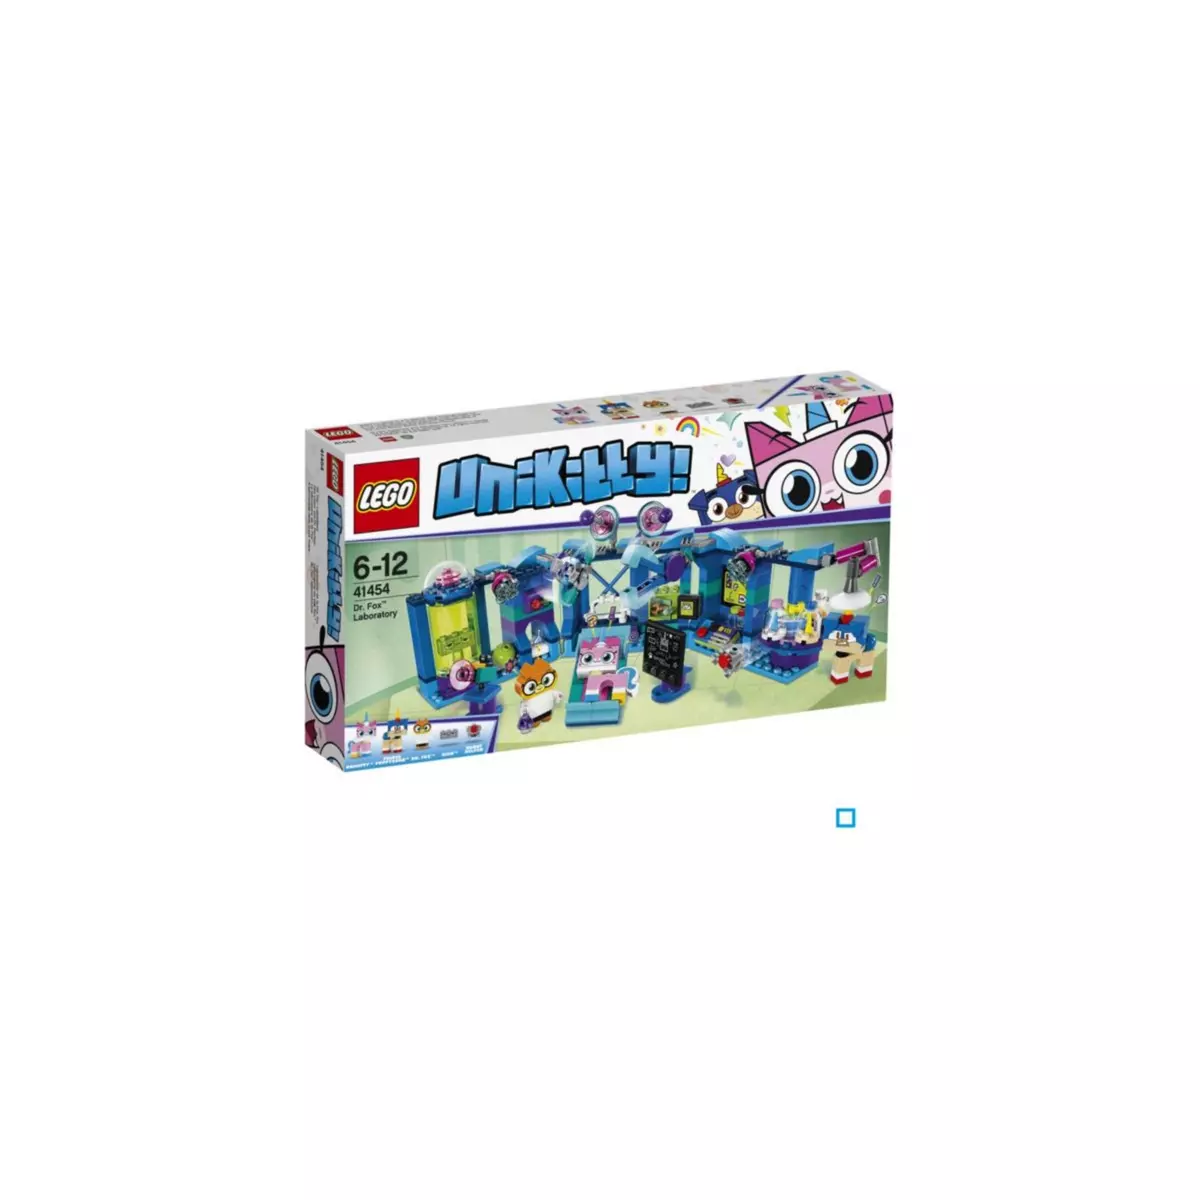 LEGO Unikitty! 41454 - Le laboratoire de Dr Fox